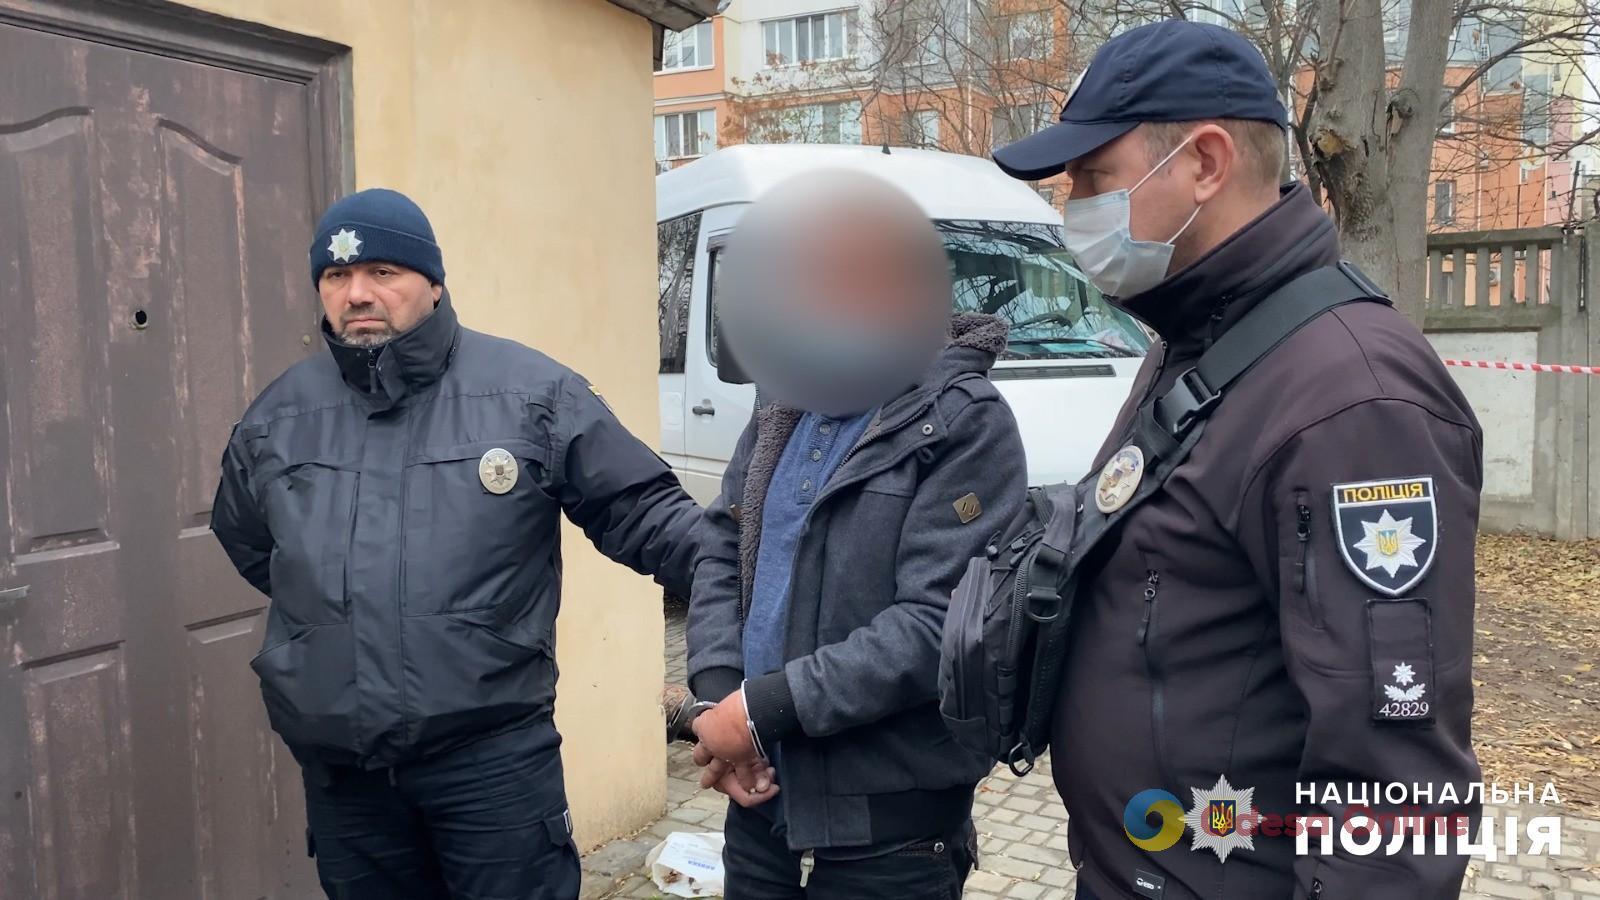 Кривава помста за образу: в Одесі поліцейські затримали чоловіка, який зарізав свого знайомого